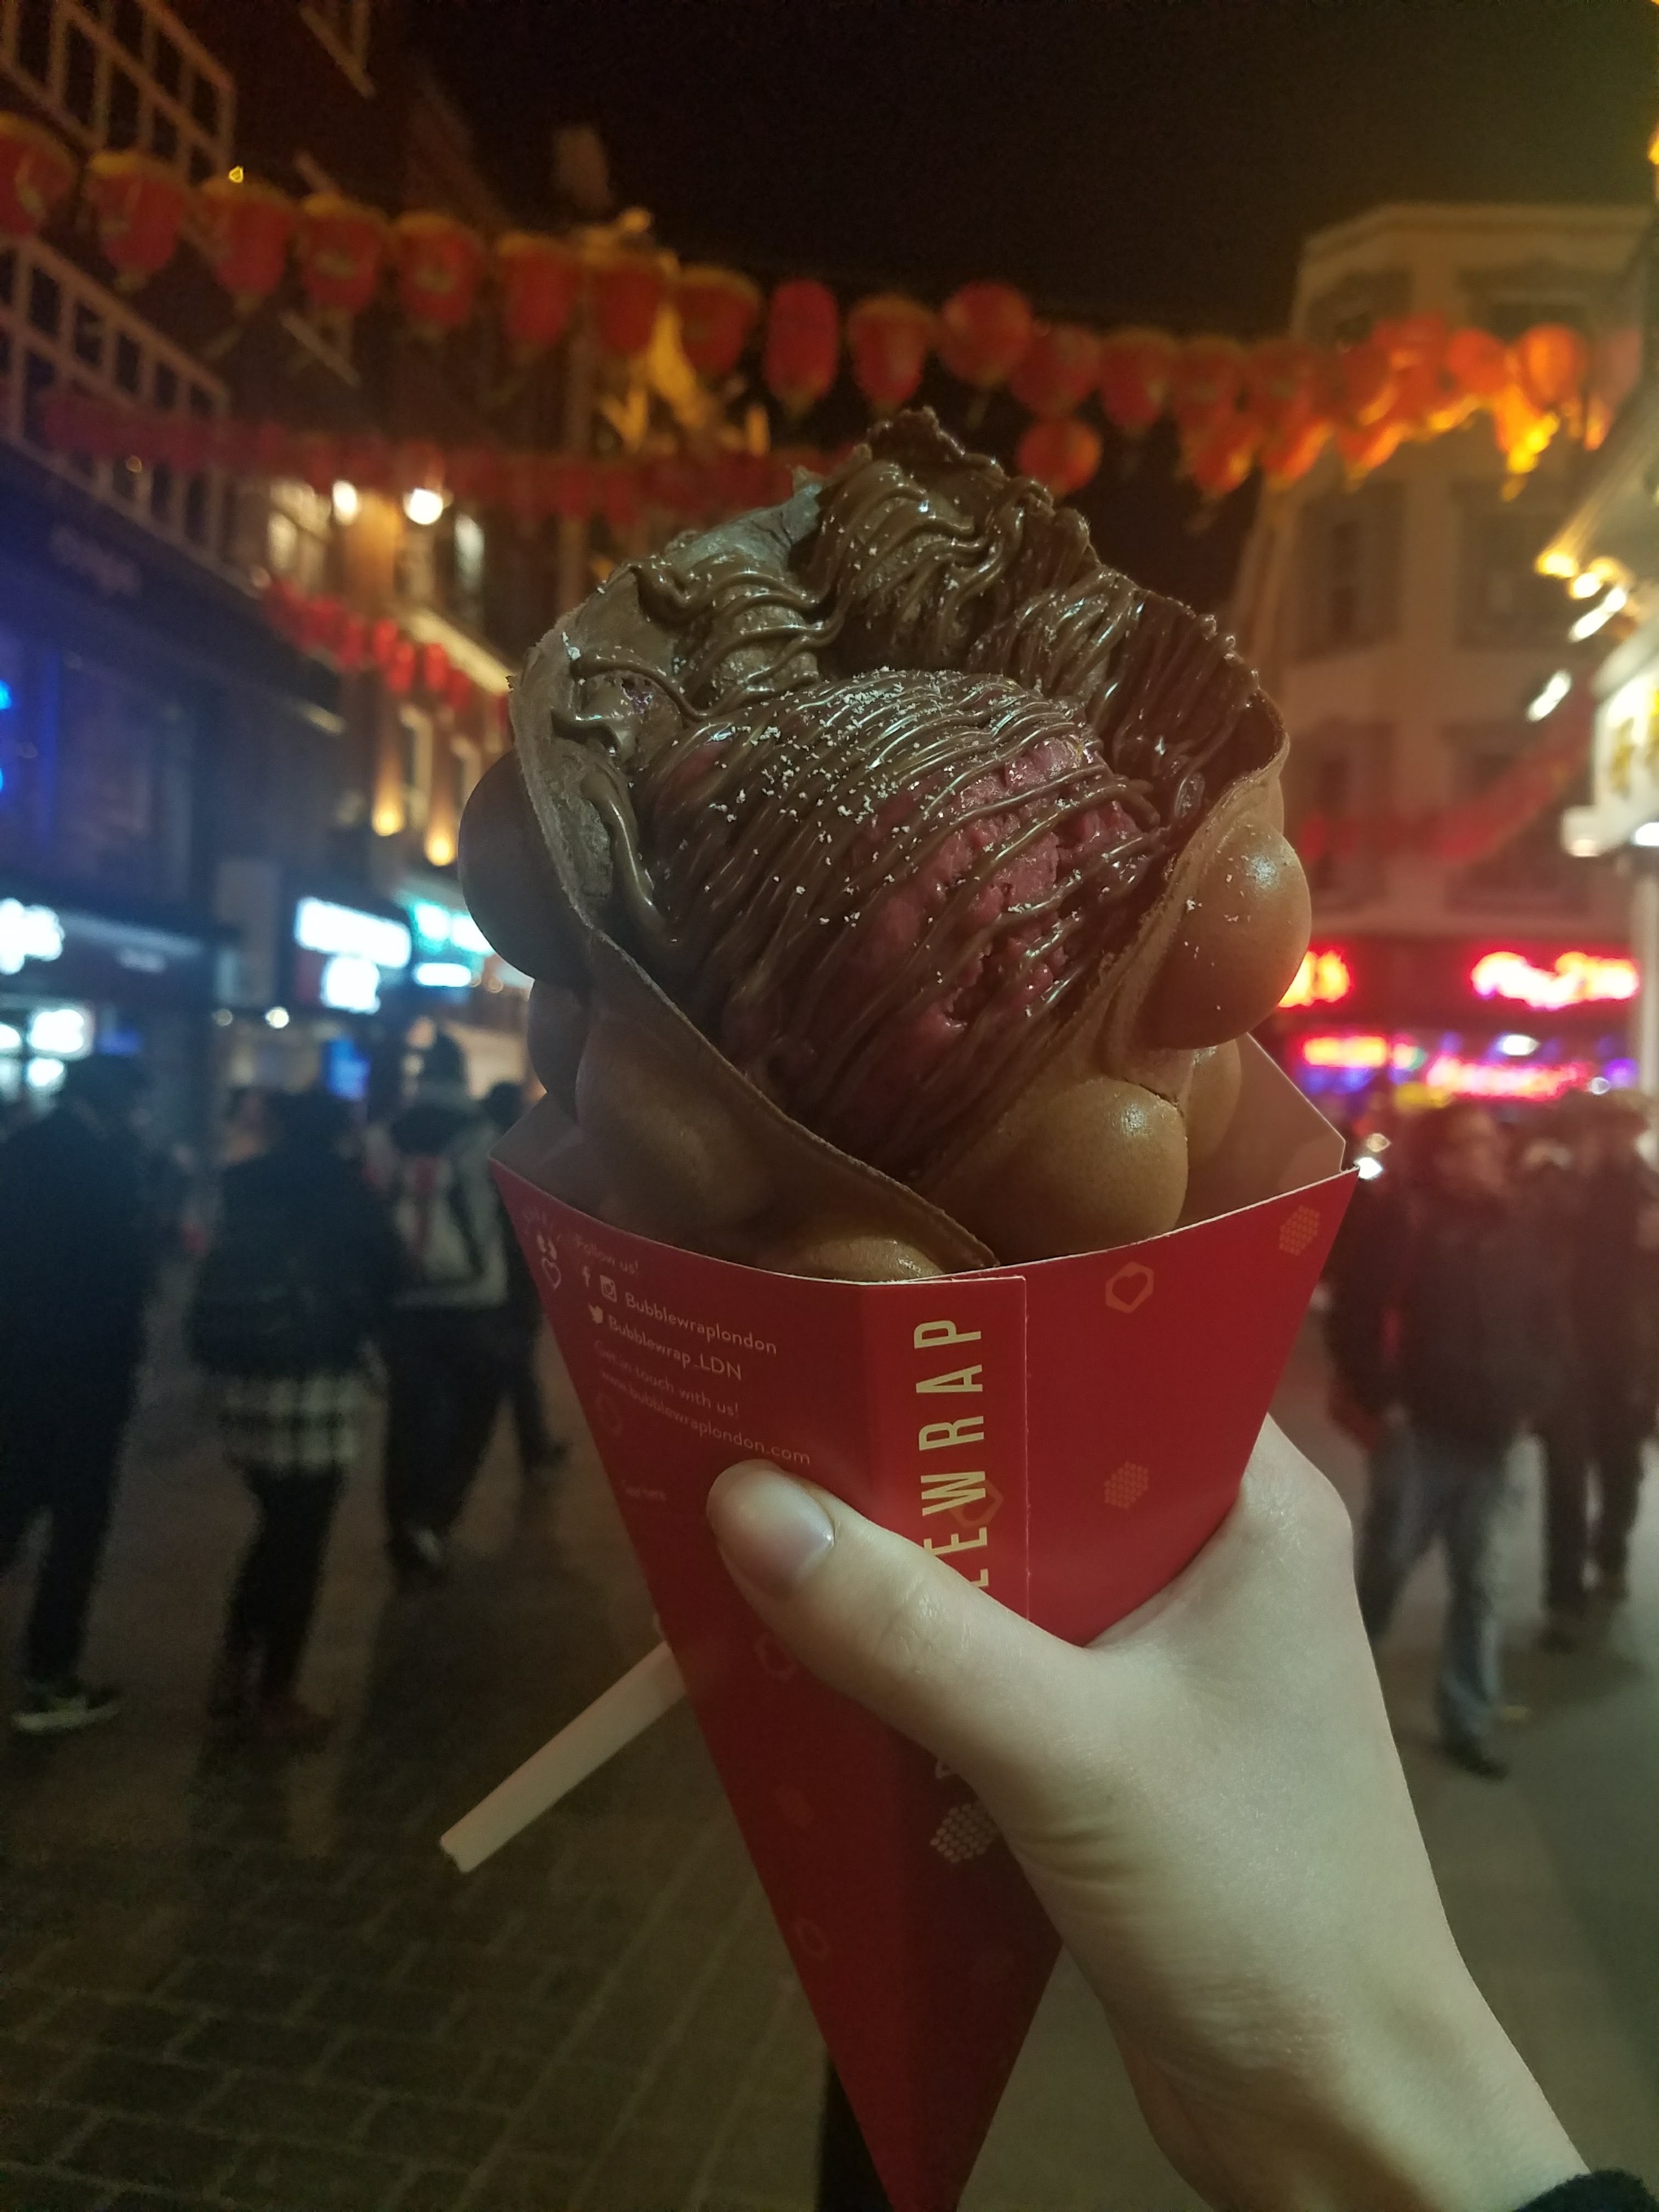 london chinatown ice cream